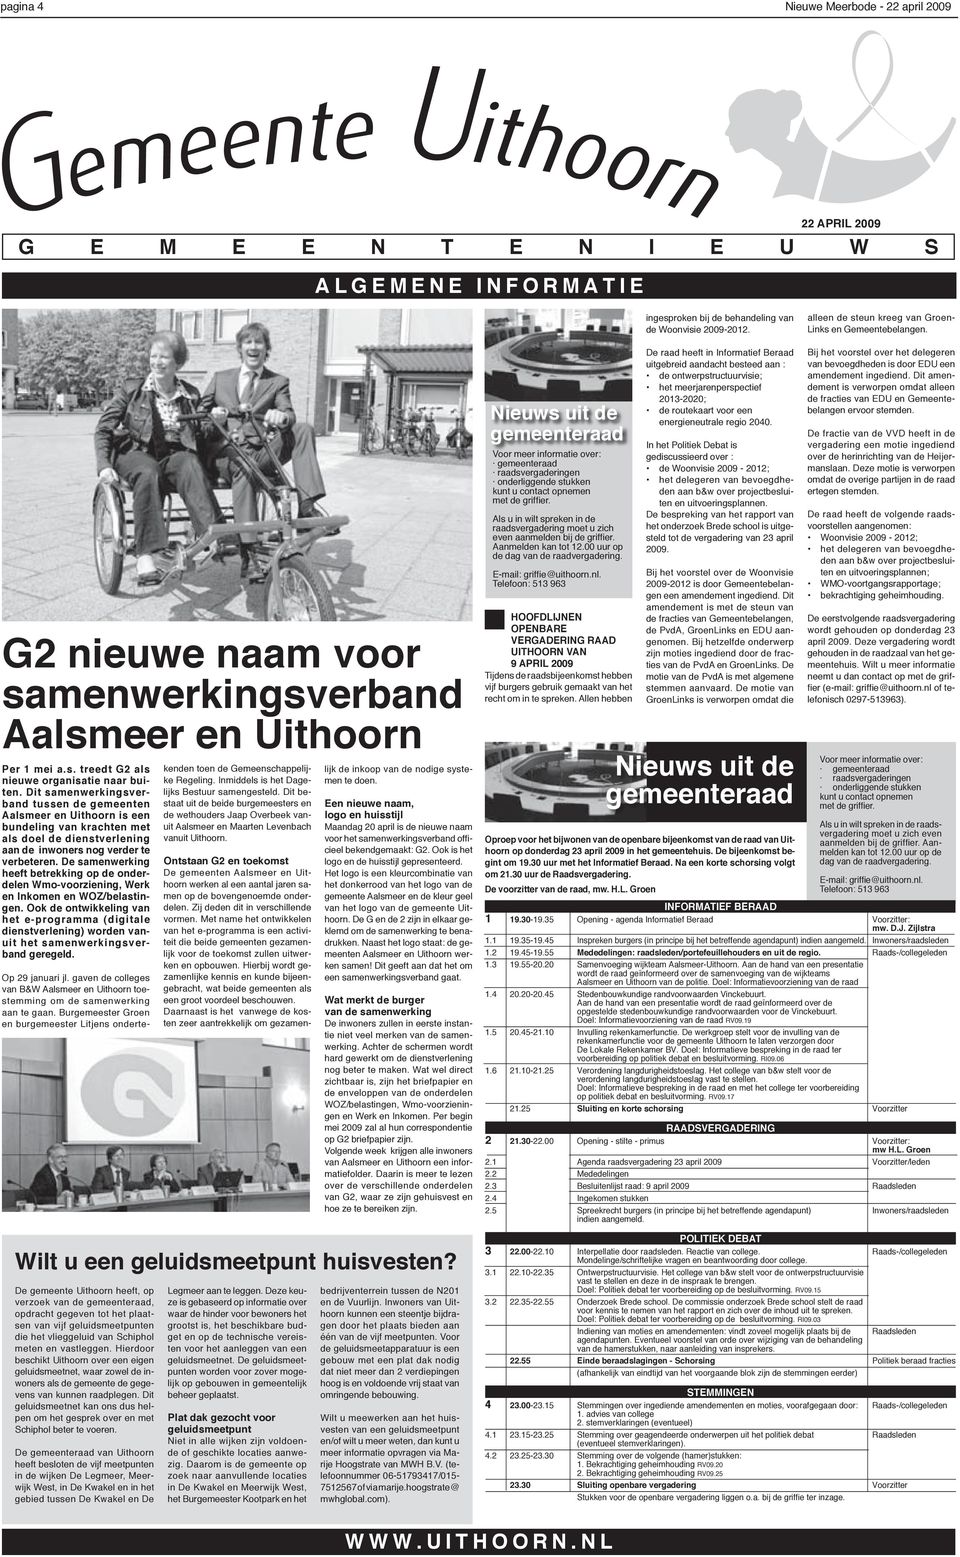 Dit samenwerkingsverband tussen de gemeenten Aalsmeer en Uithoorn is een bundeling van krachten met als doel de dienstverlening aan de inwoners nog verder te verbeteren.